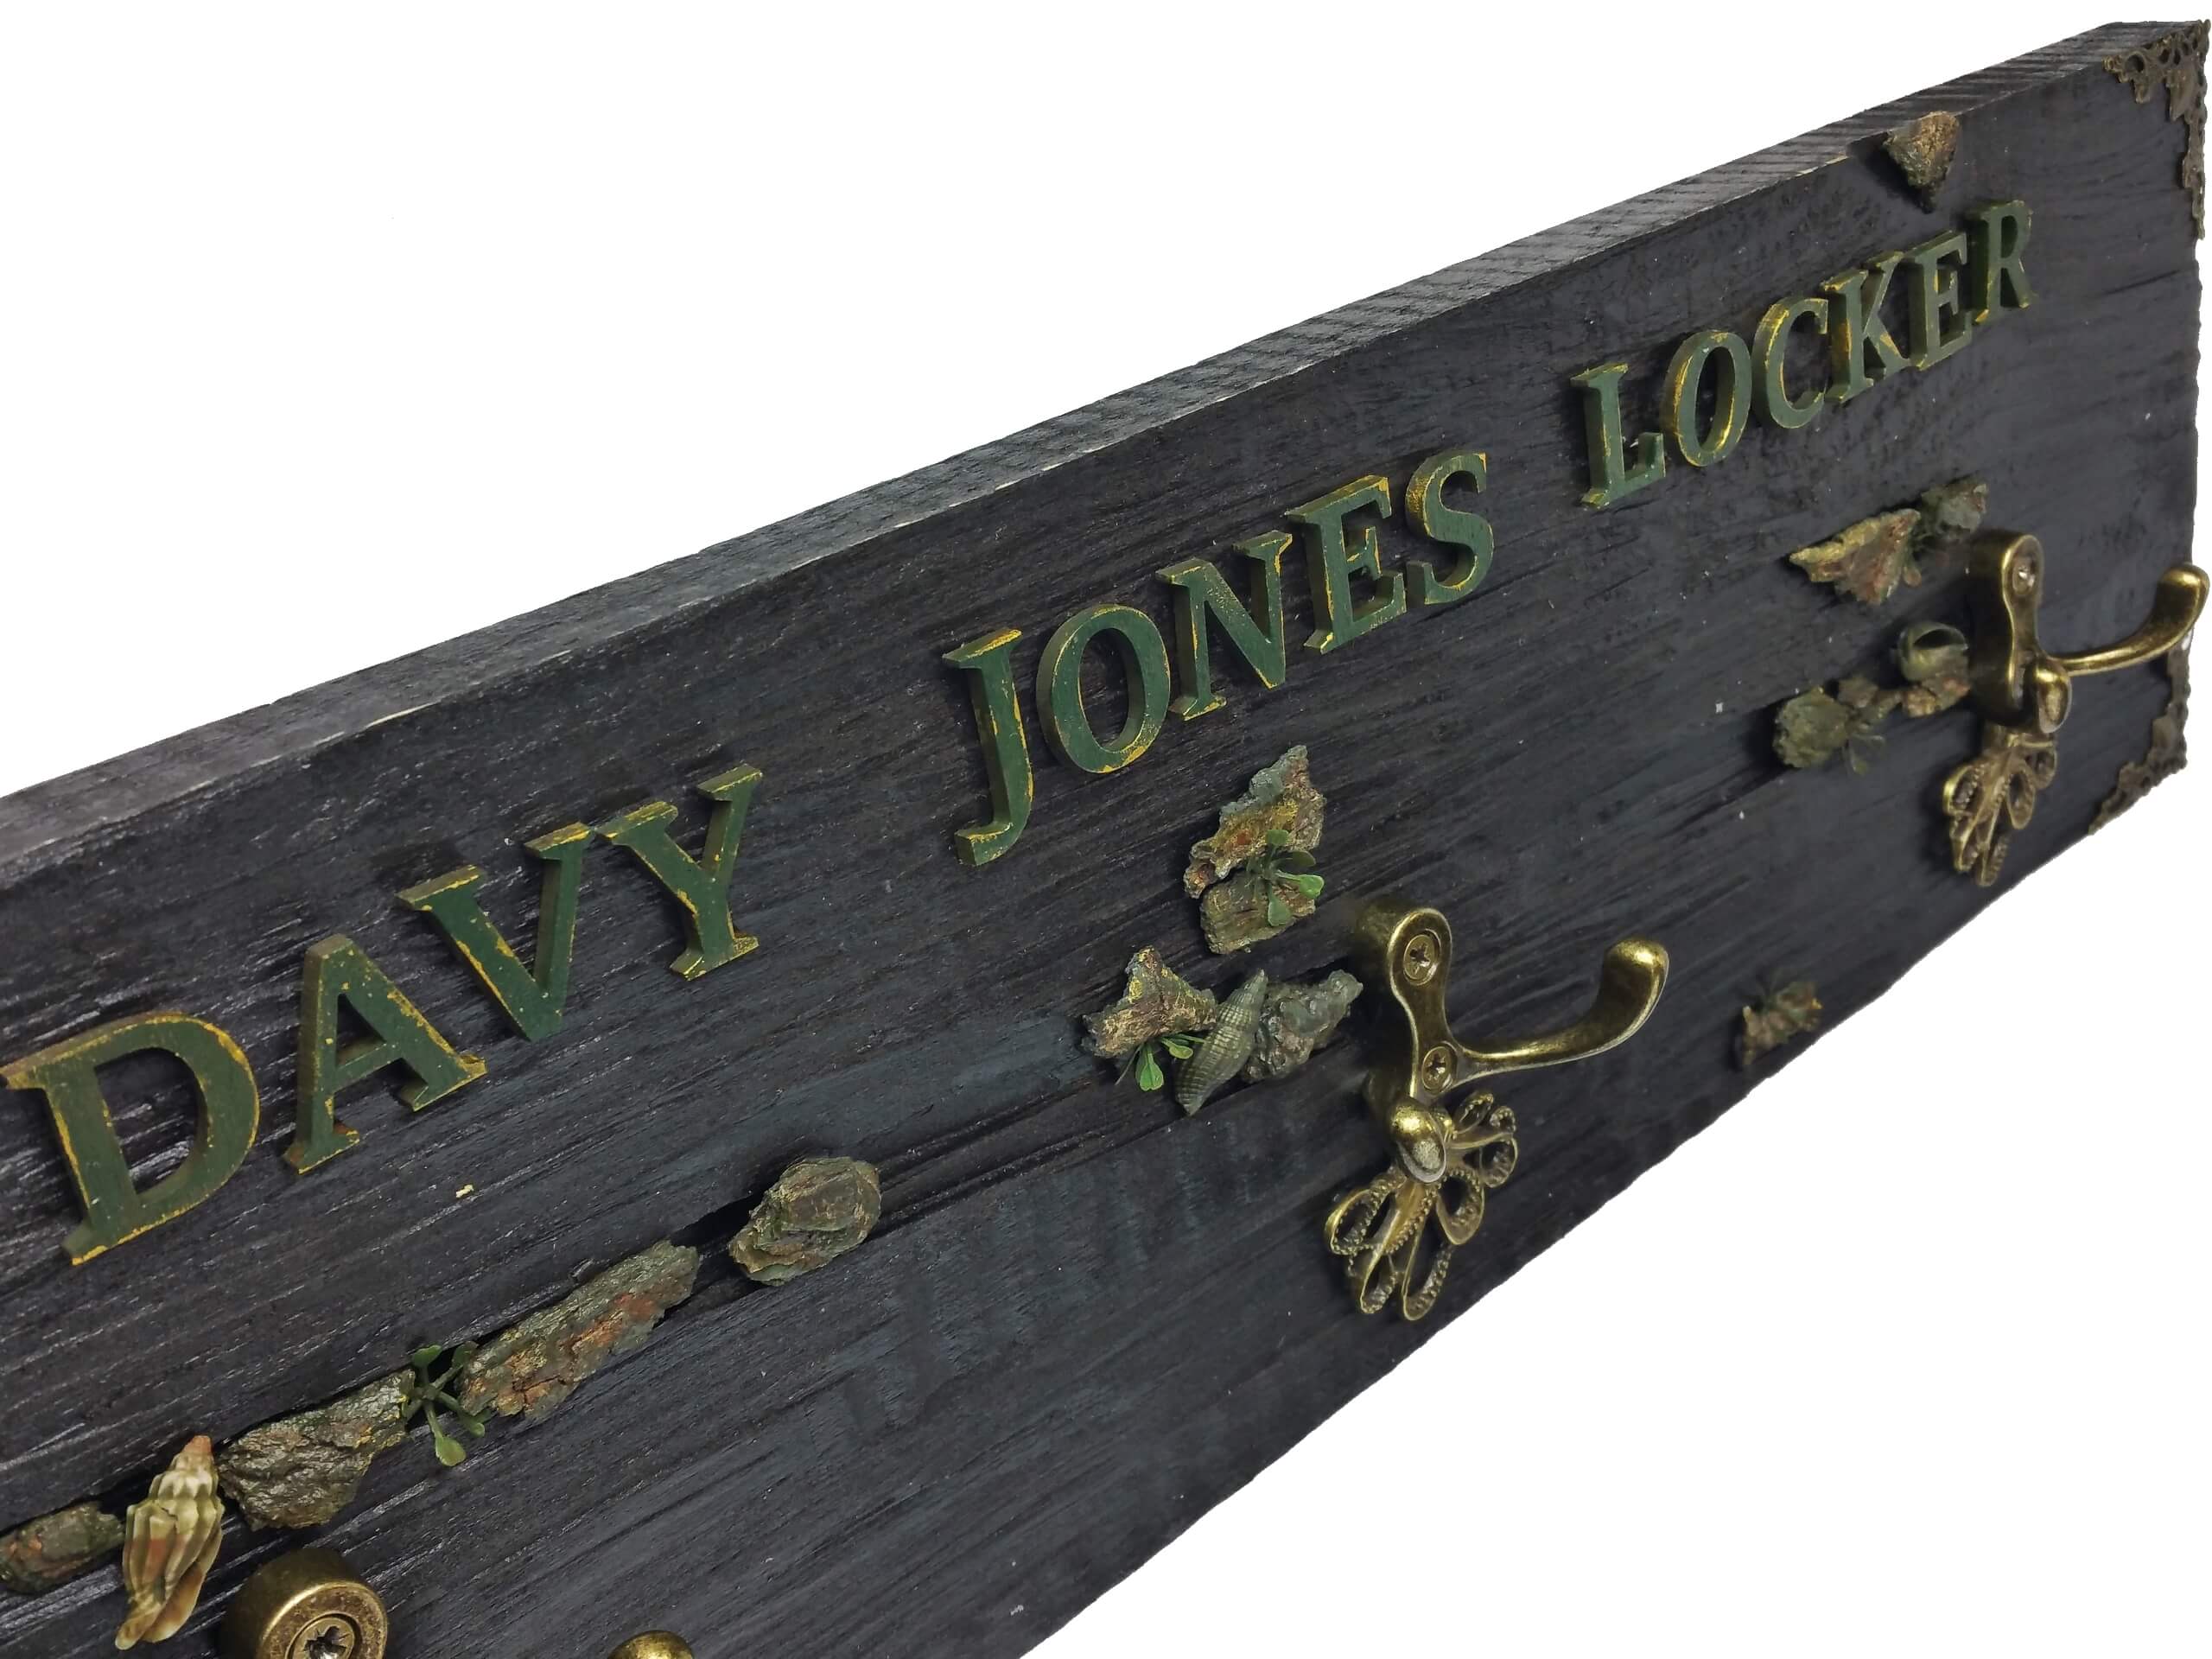 Davy Jones locker caption from wooden coat rack